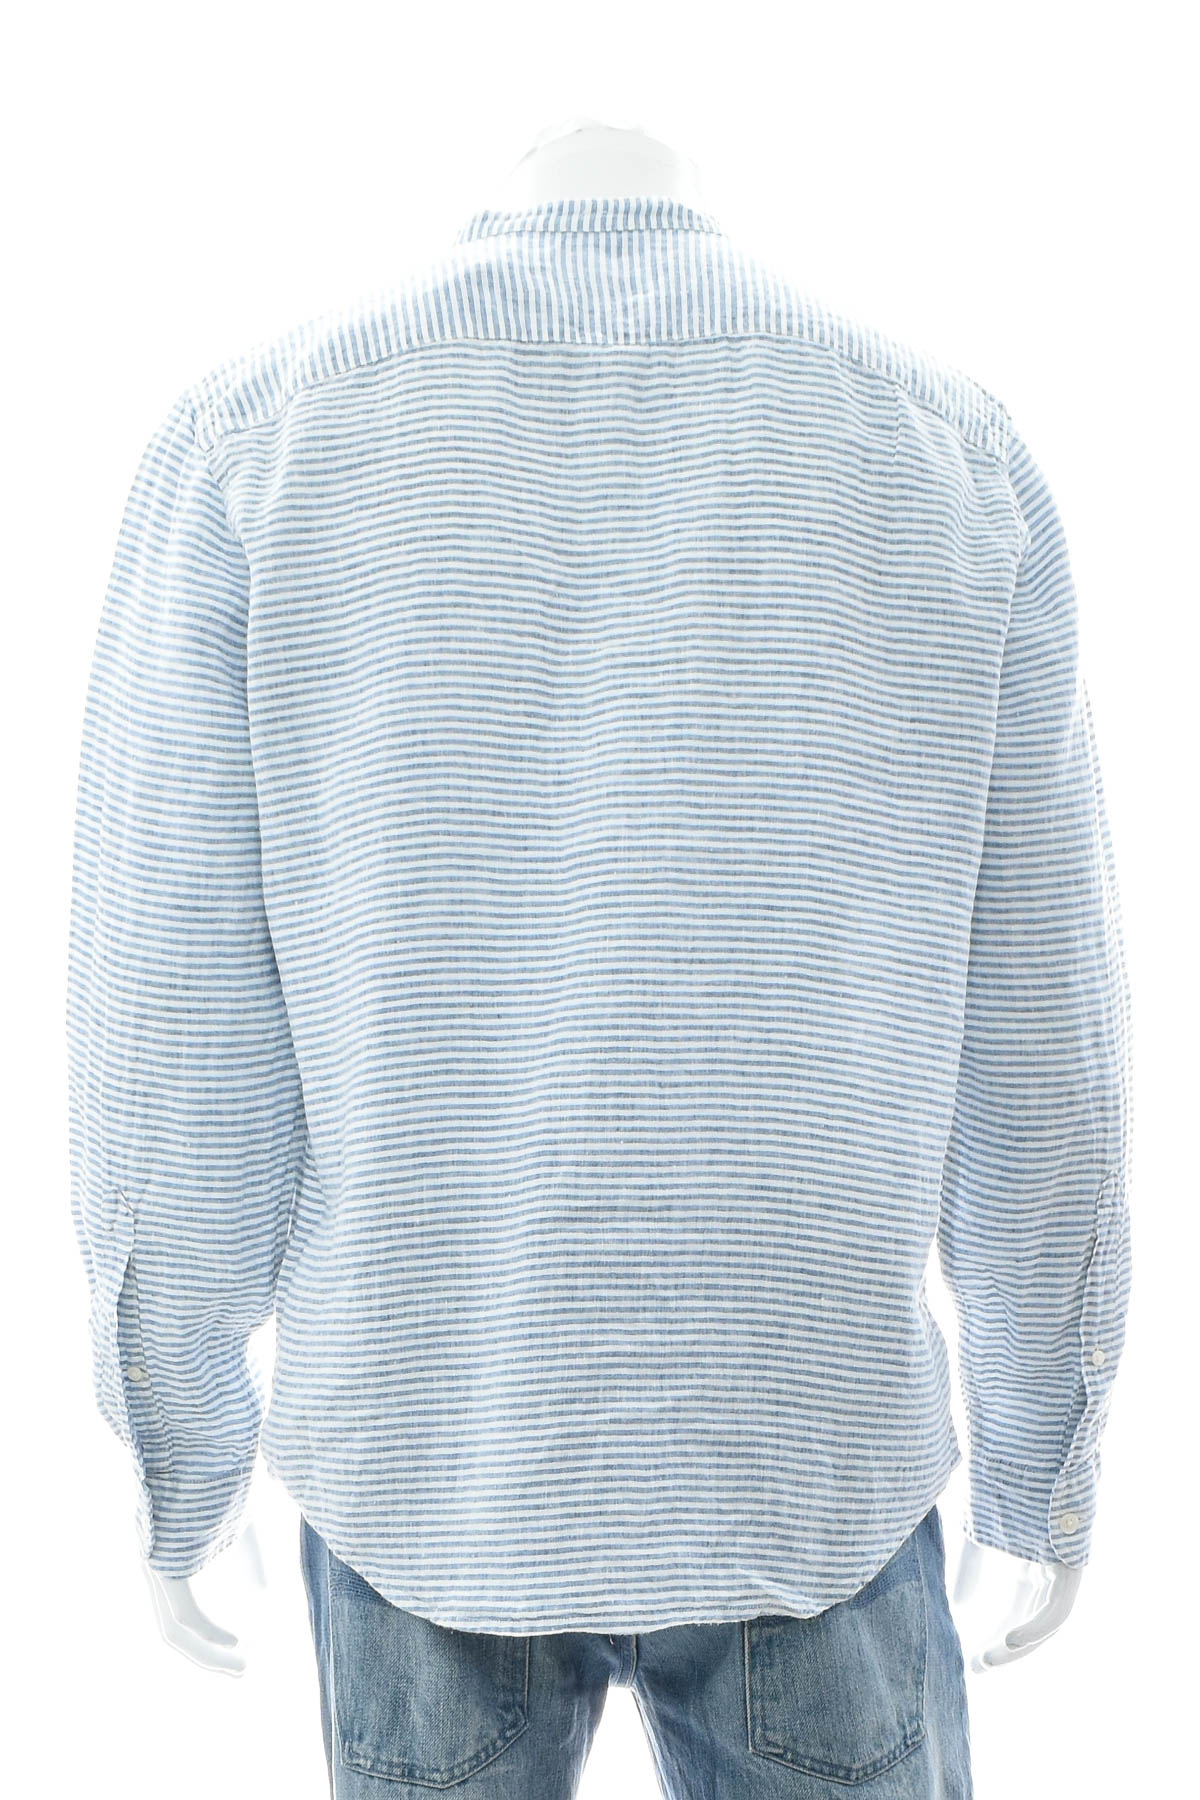 Ανδρικό πουκάμισο - Abercrombie & Fitch - 1